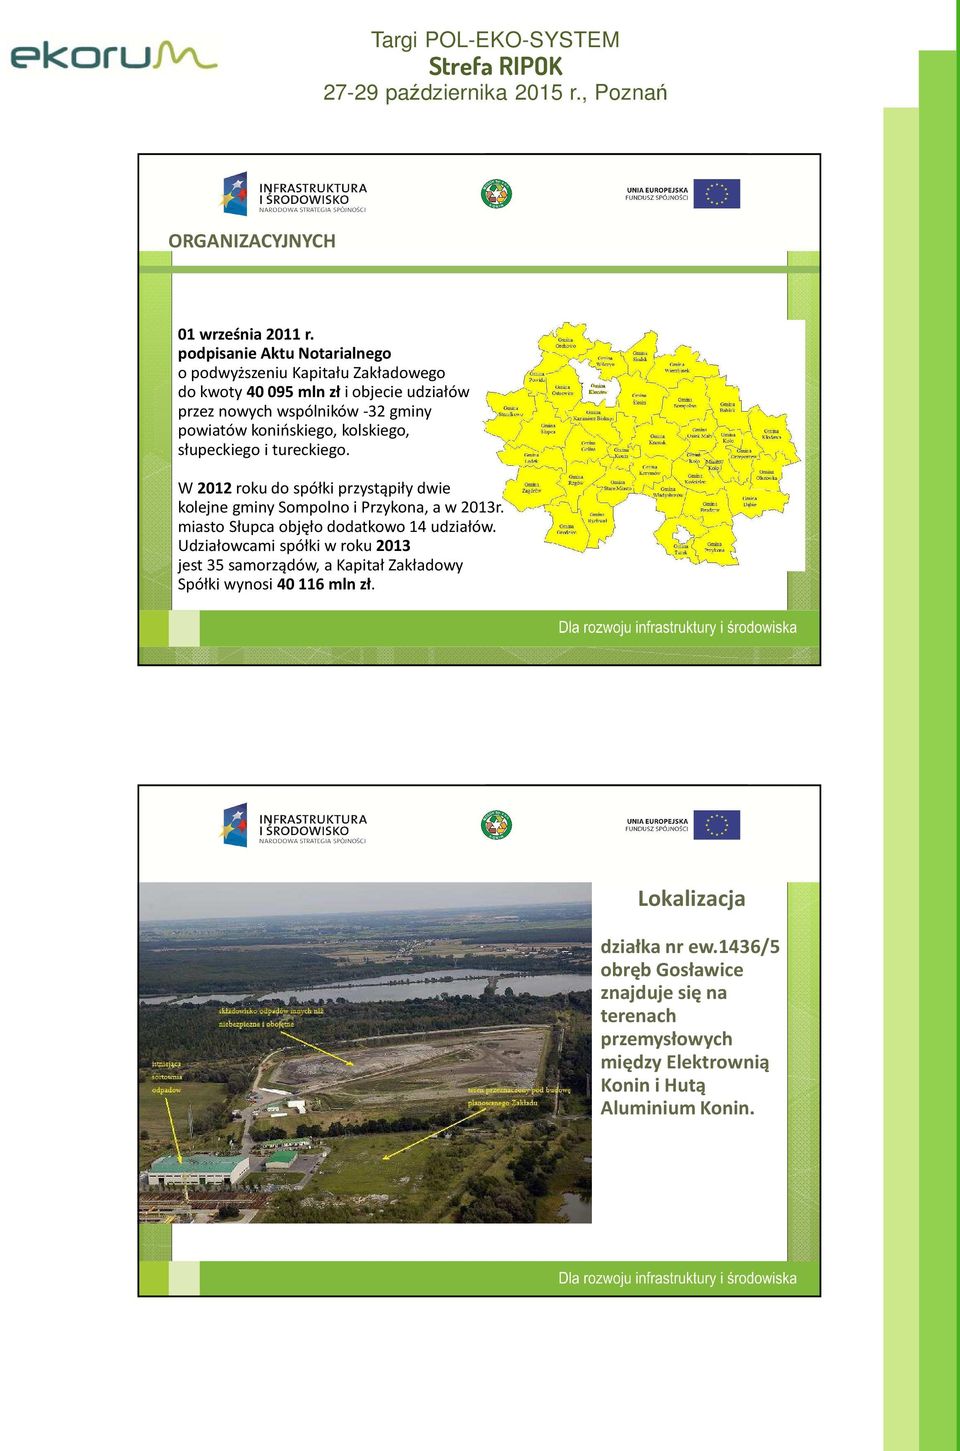 kolskiego, słupeckiego i tureckiego. W 2012 roku do spółki przystąpiły dwie kolejne gminy Sompolno i Przykona, a w 2013r. miasto Słupca objęło dodatkowo 14 udziałów.